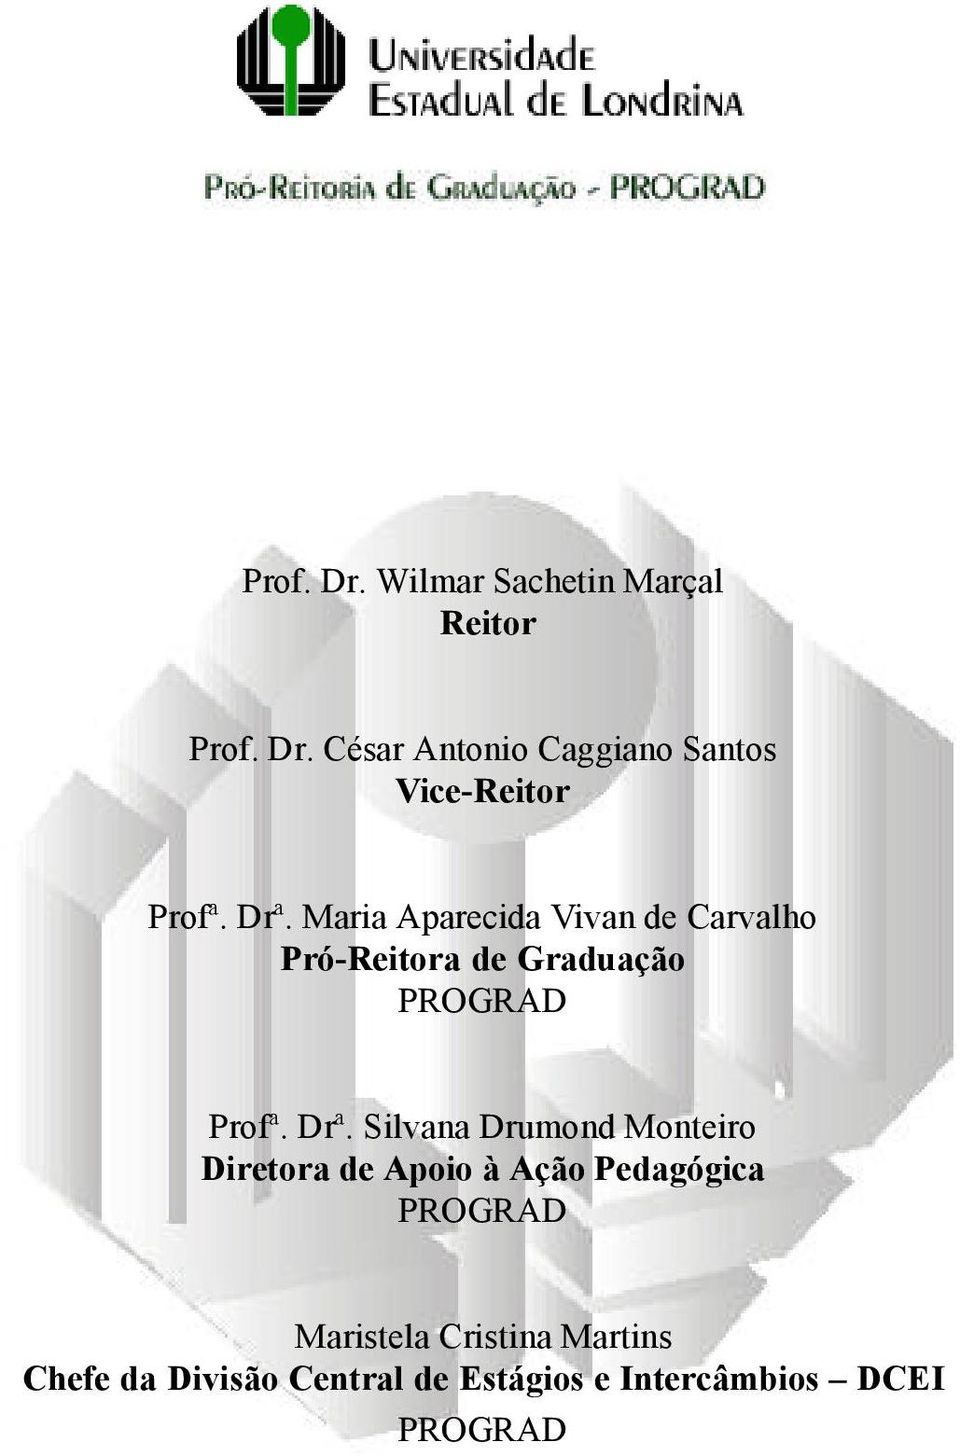 Maria Aparecida Vivan de Carvalho Pró-Reitora de Graduação PROGRAD Profª. Drª.